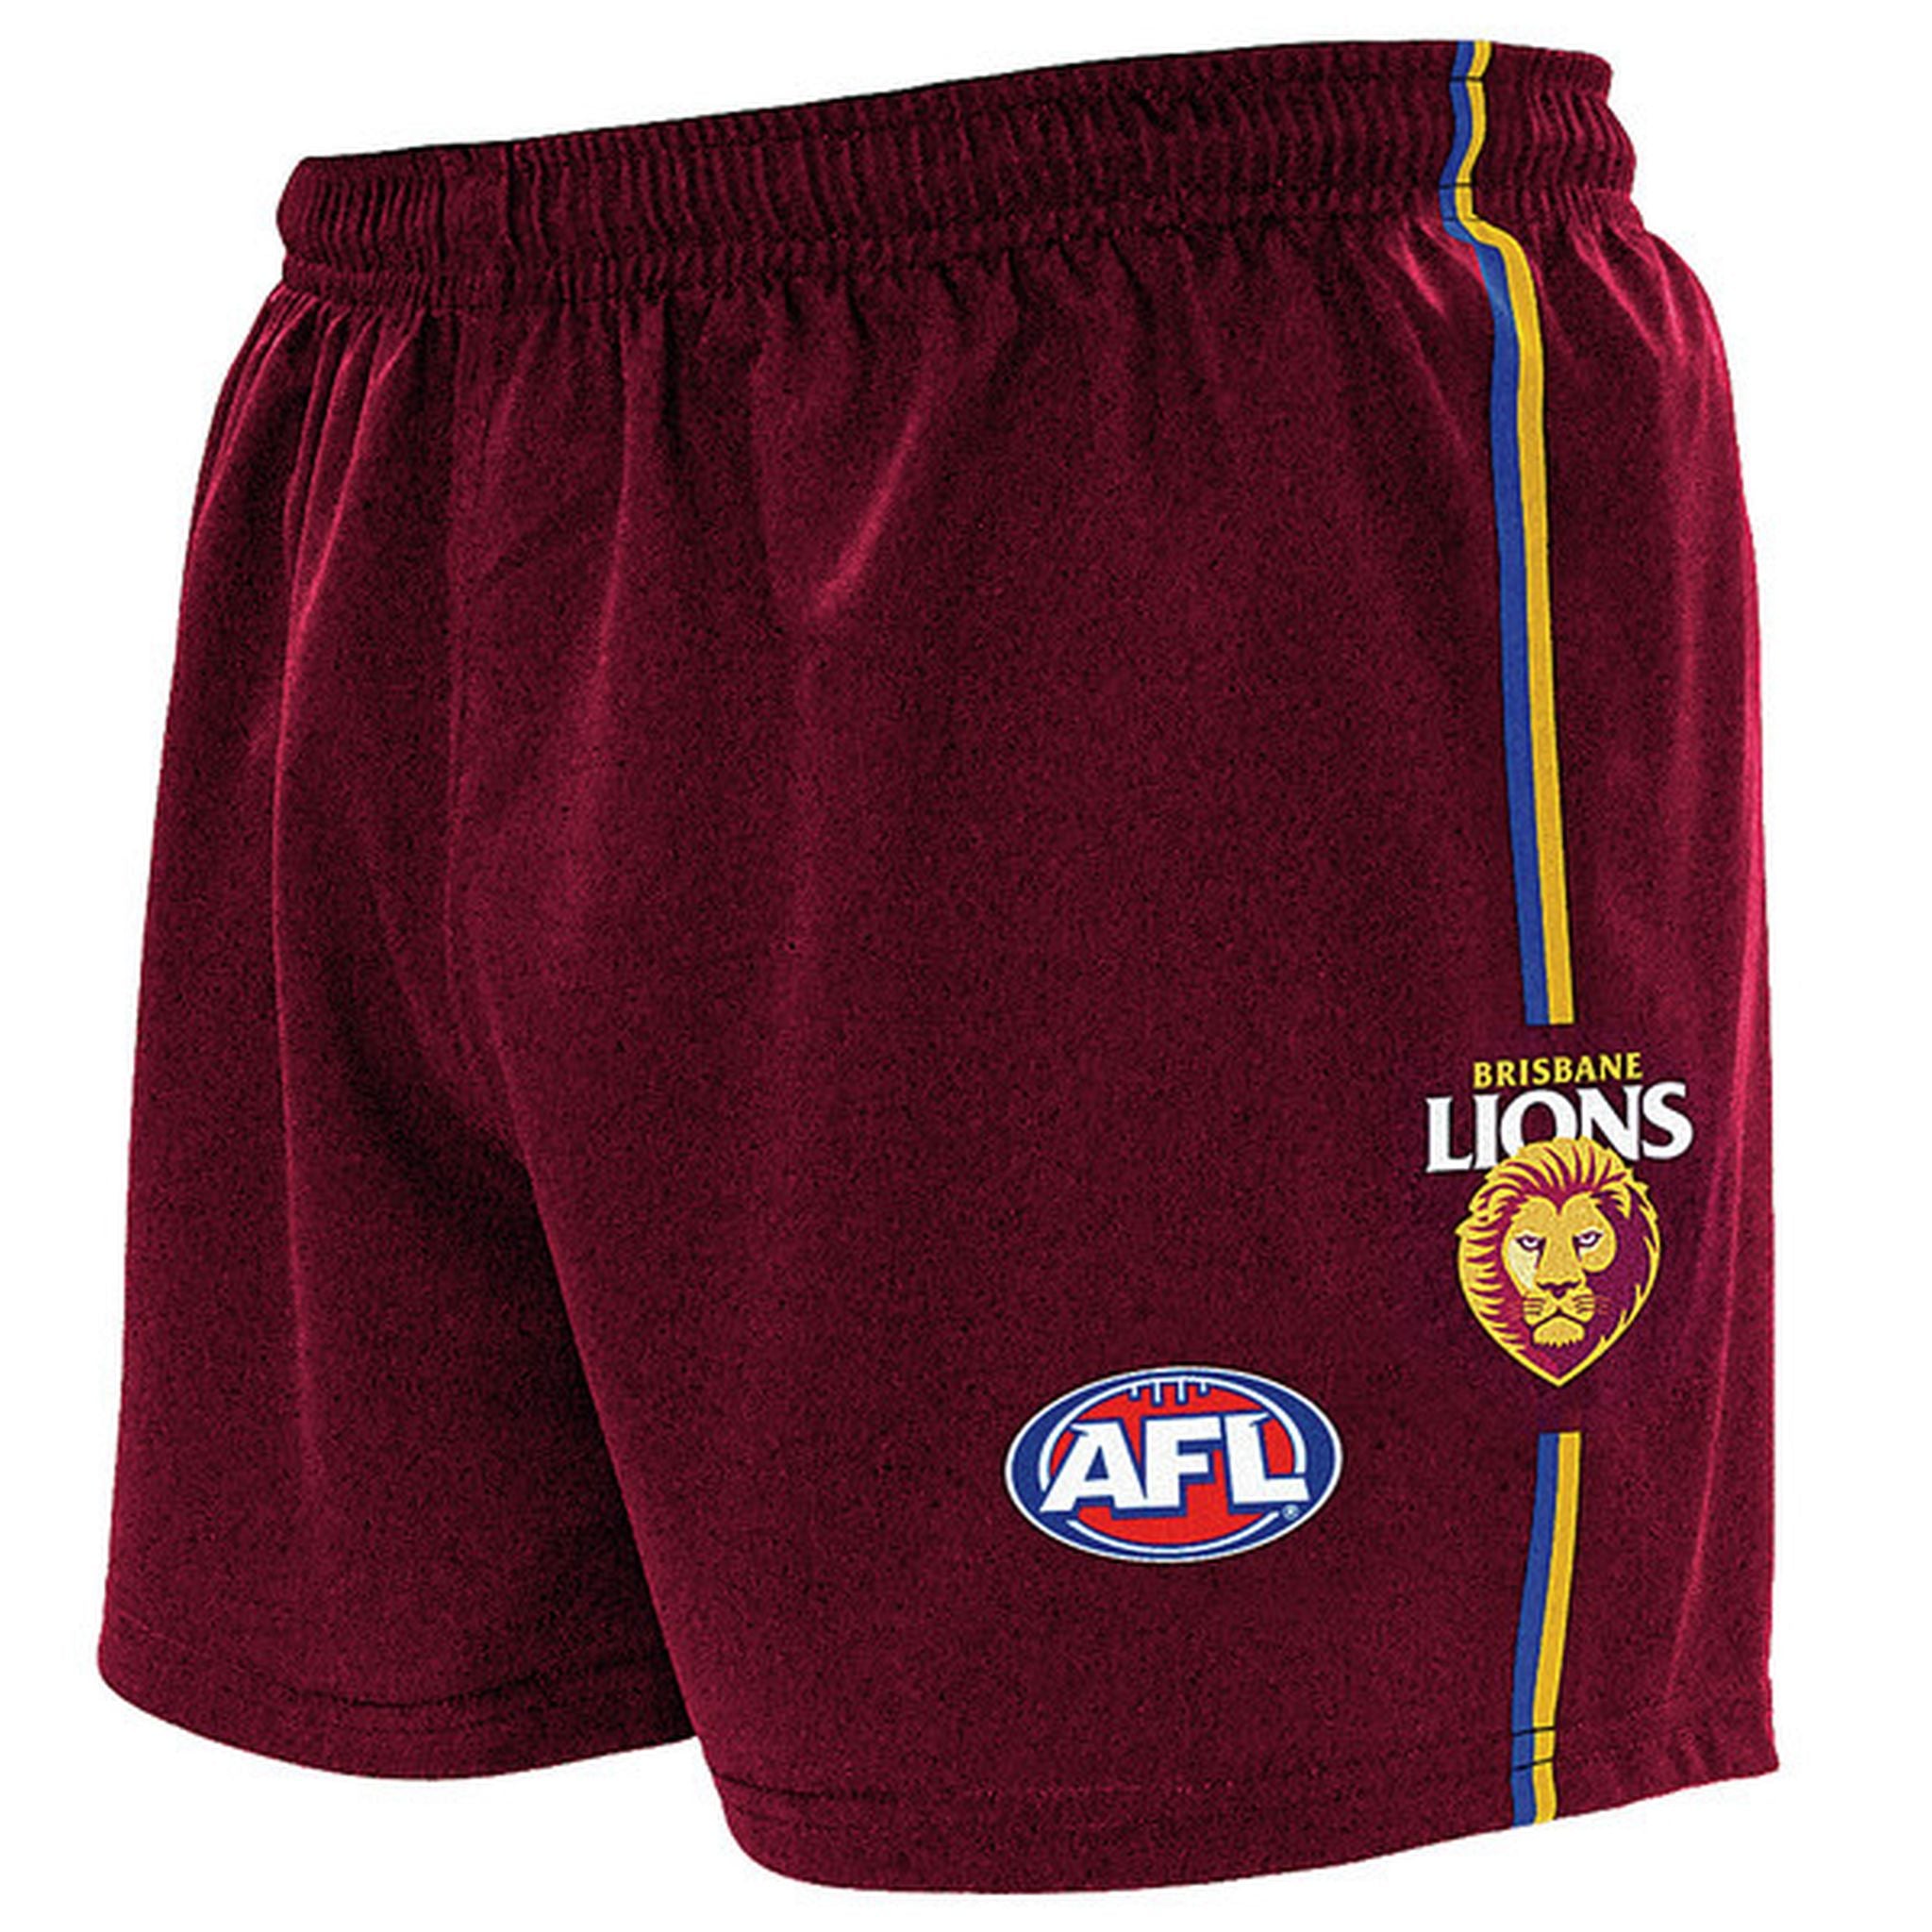 Burley Brisbane Lions AFL Replica Adults Shorts